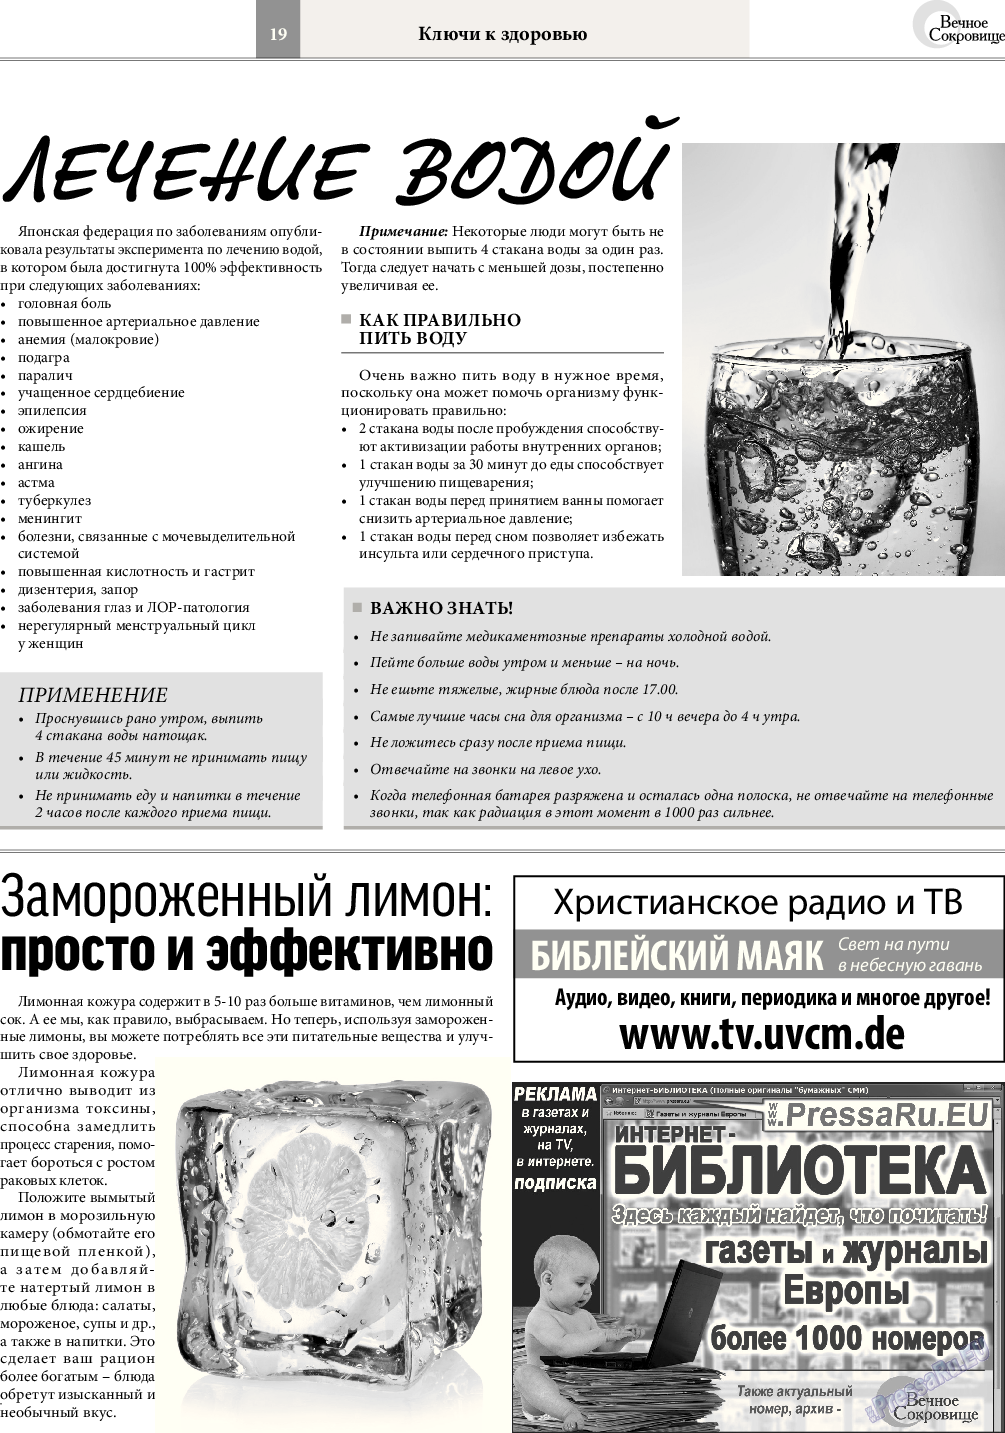 Вечное сокровище, газета. 2017 №2 стр.19